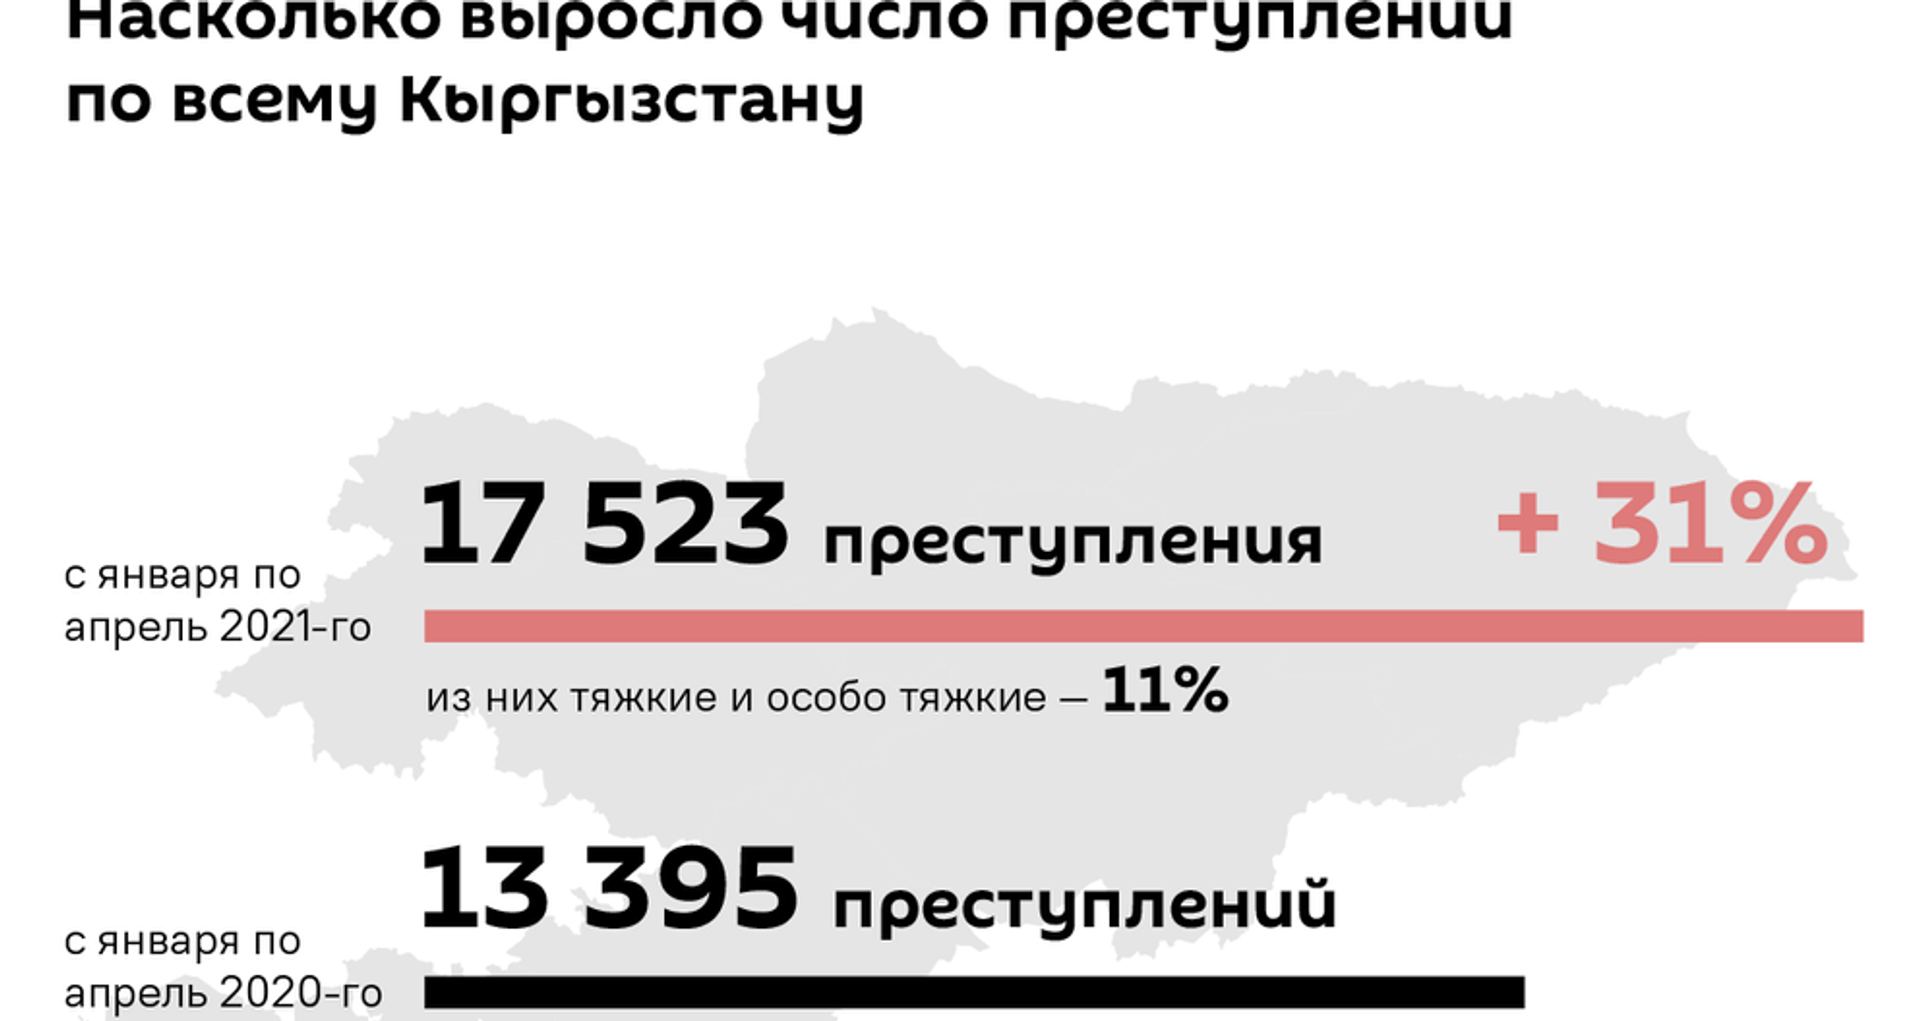 Самые криминальные места в Кыргызстане 2021 - Sputnik Кыргызстан, 1920, 30.06.2021